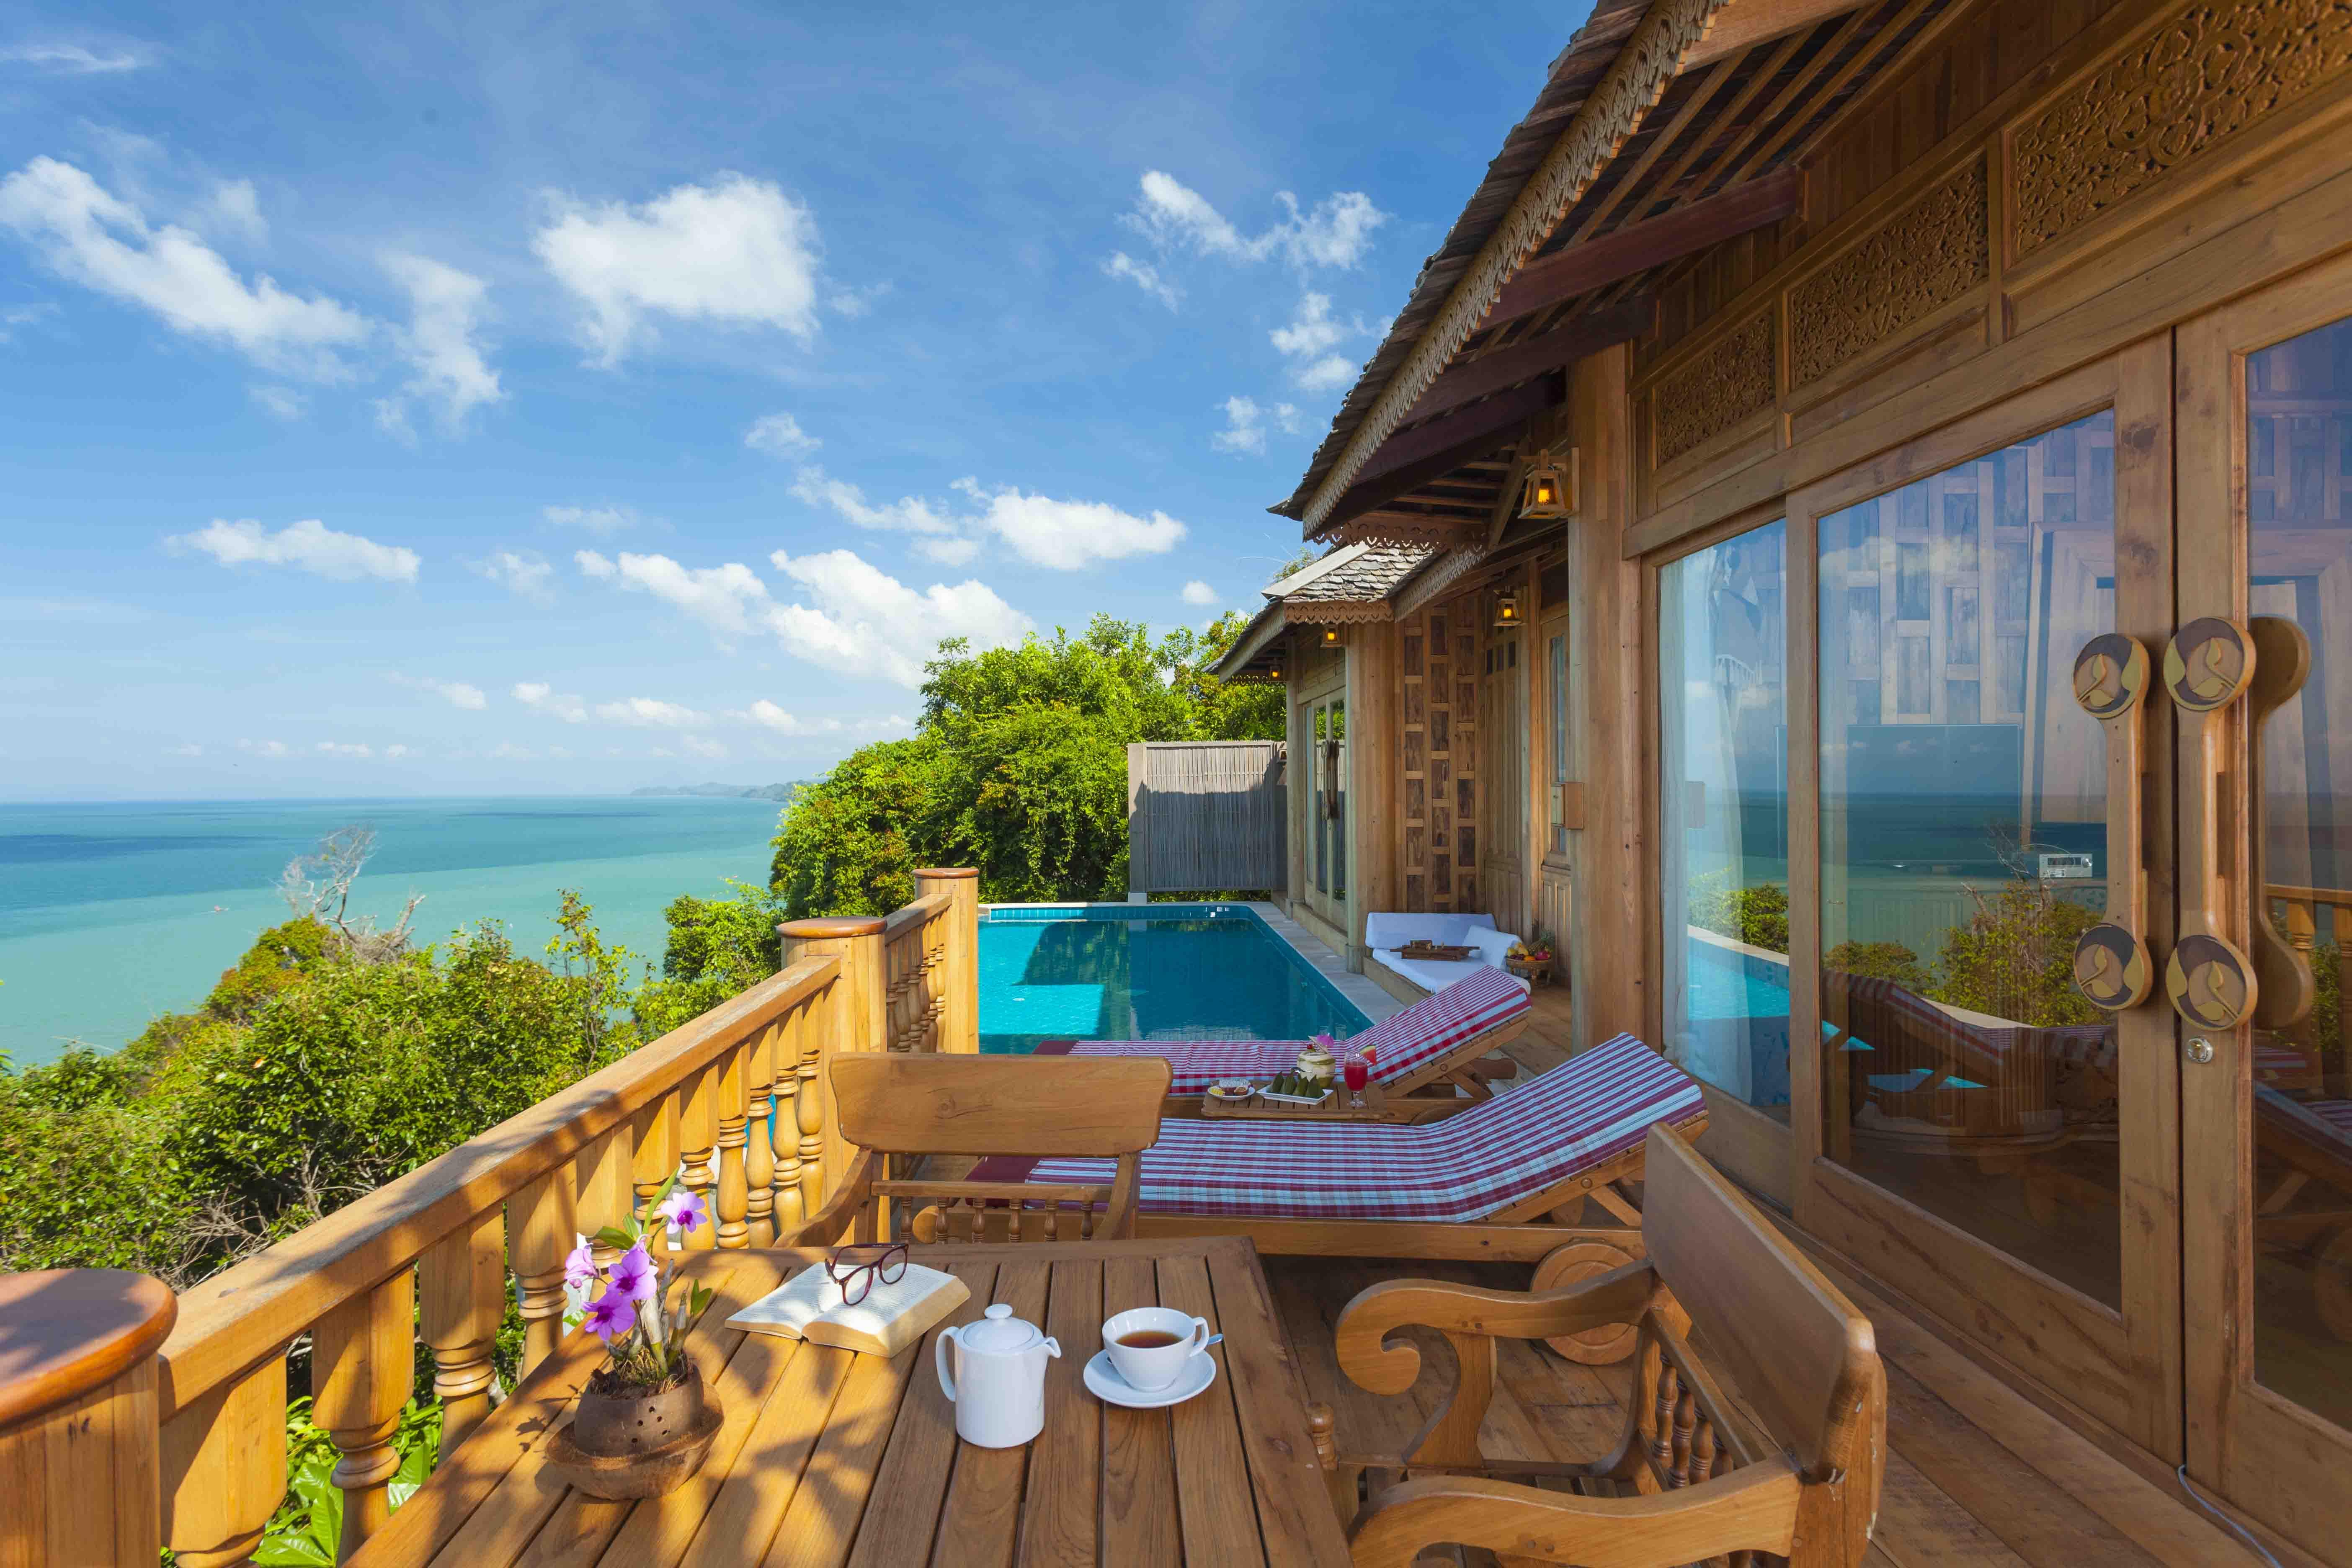 โรงแรม สันธิญา เกาะยาวใหญ่ รีสอร์ท แอนด์ สปา เกาะยาวใหญ่ 5* (ไทย) - จาก  3236 THB | HOTELMIX